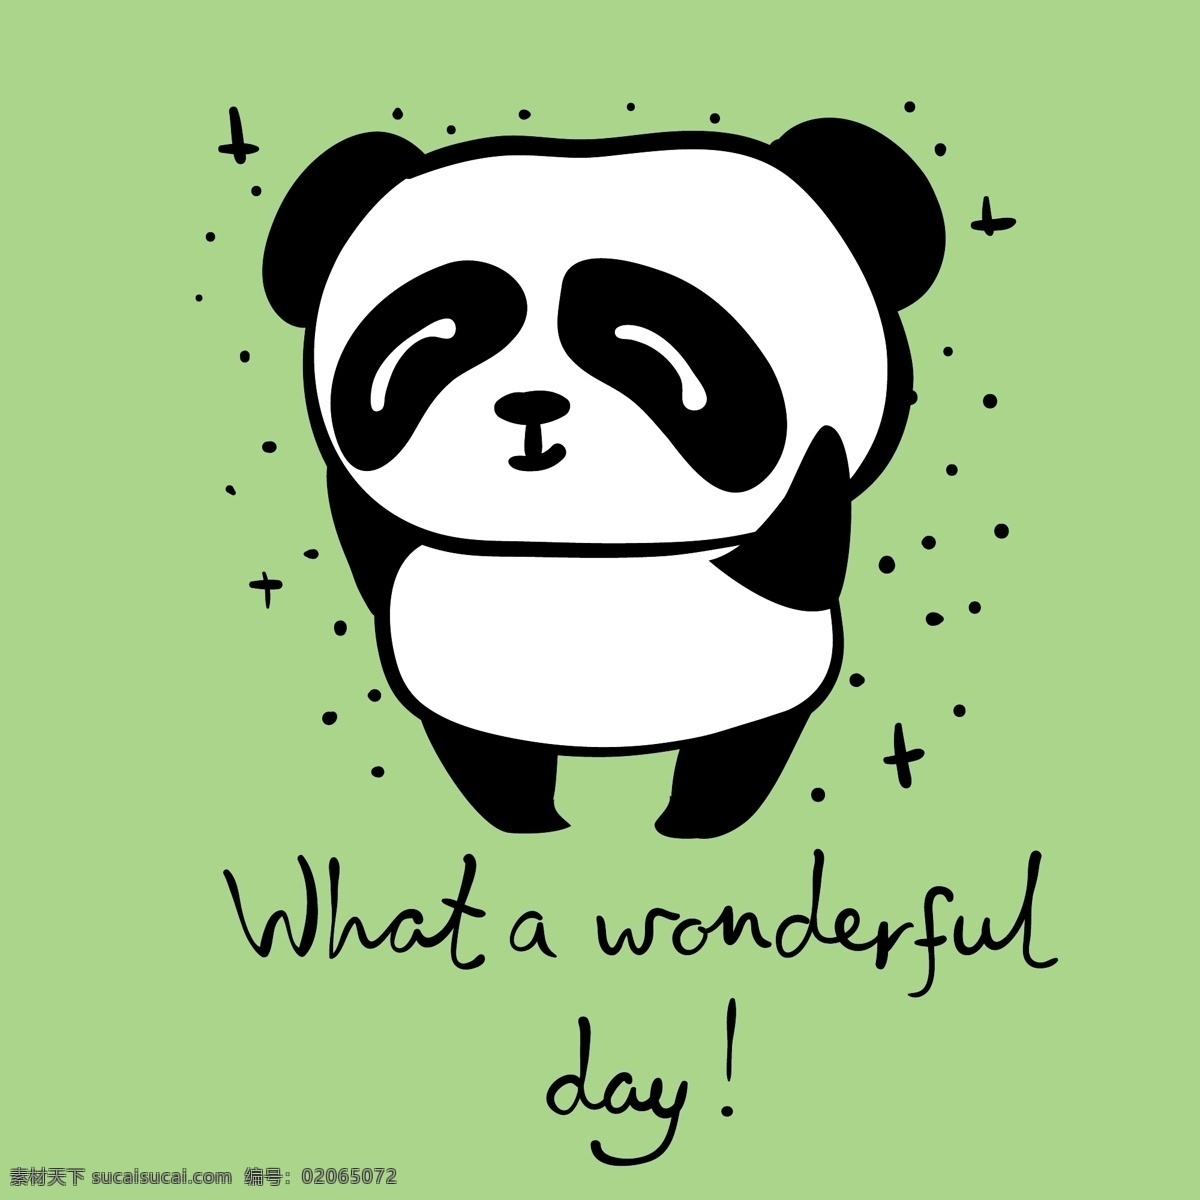 欢乐 小熊猫 卡通 动物 黑白 可爱 绿色 平面素材 设计素材 生活 矢量素材 温暖 艺术